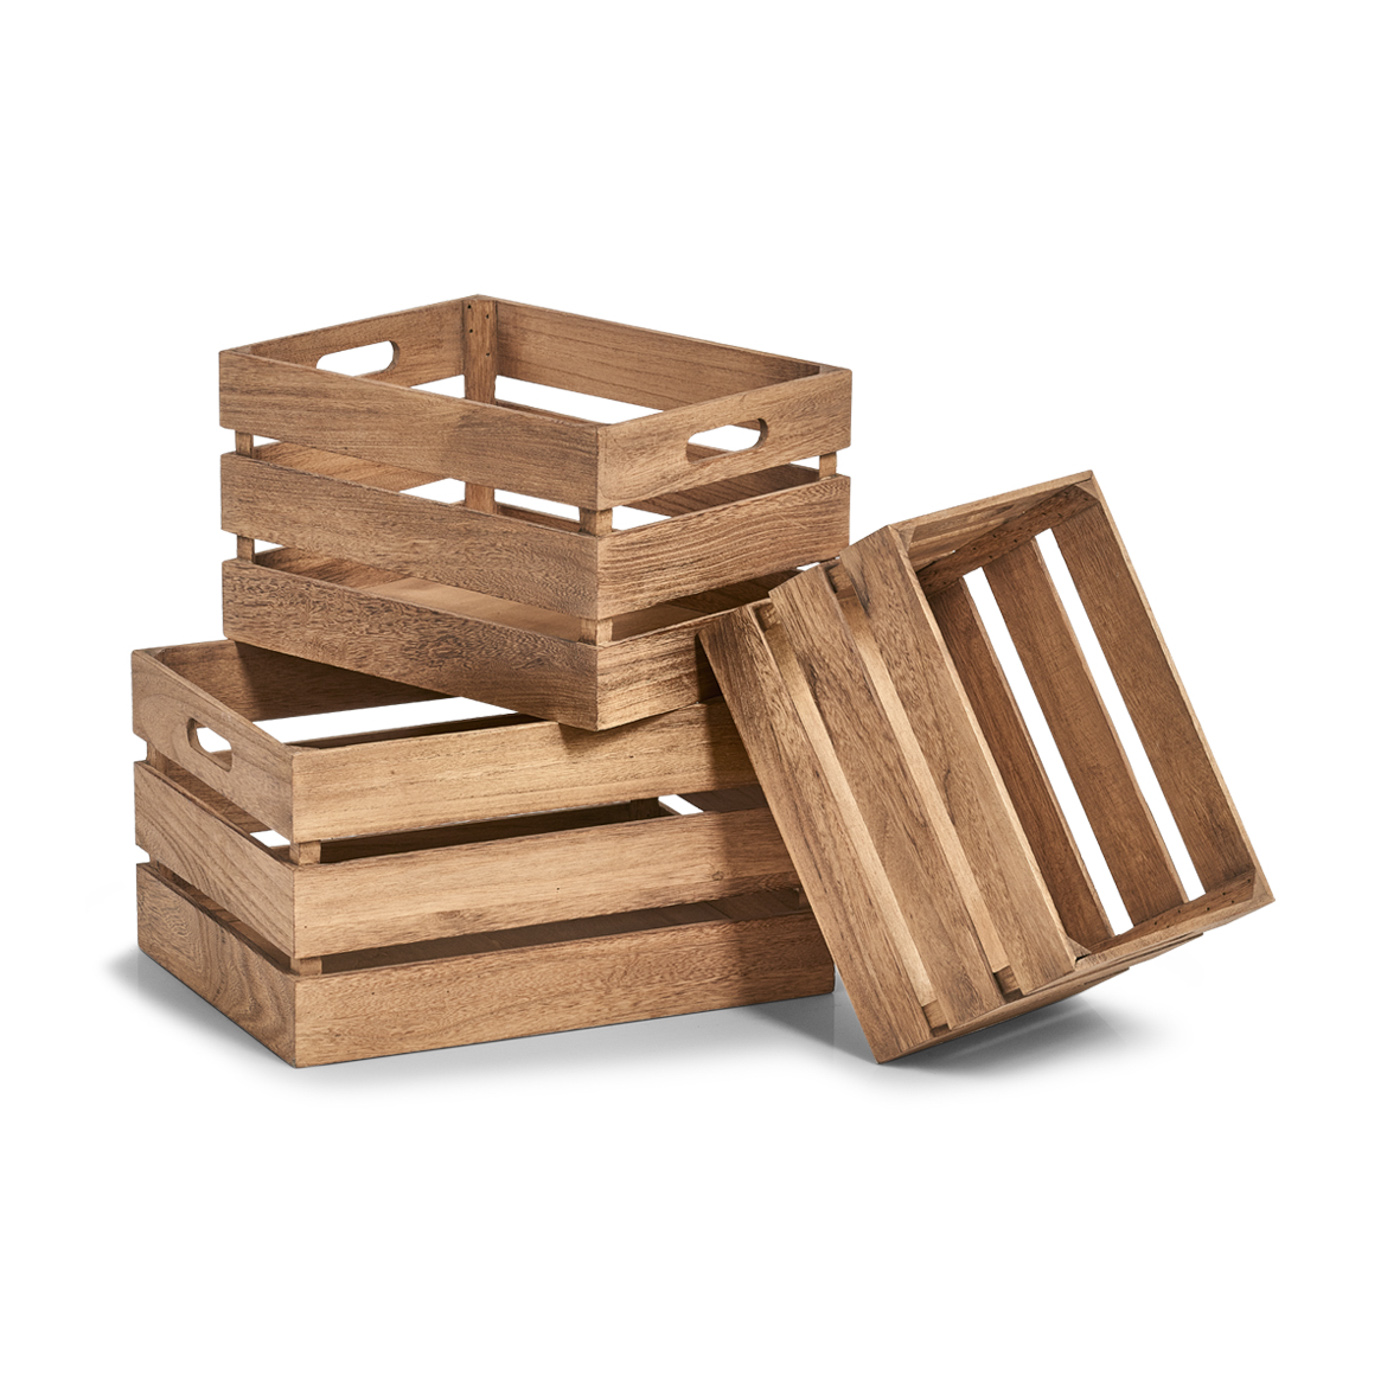 Aufbewahrungs-Kiste, Holz lackiert, 31x21x19 cm. Farbe: natur. Diese praktische Aufbewahrungskiste wurde aus hochwertigem Holz gefertigt und